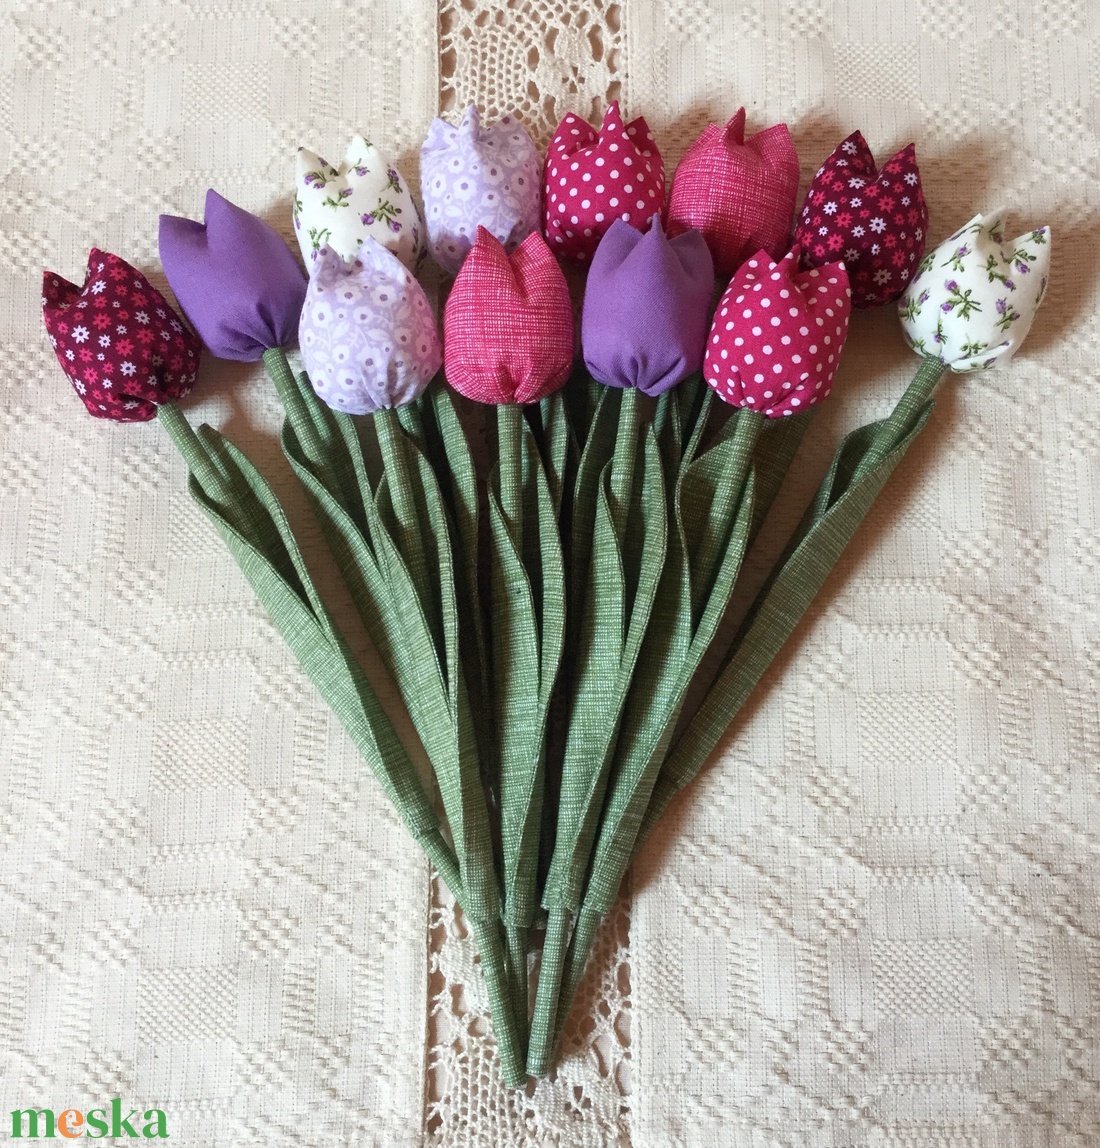 Textil tulipán / szett: 12 db/ ingyen ajándékkísérővel - otthon & lakás - dekoráció - virágdísz és tartó - csokor & virágdísz - Meska.hu